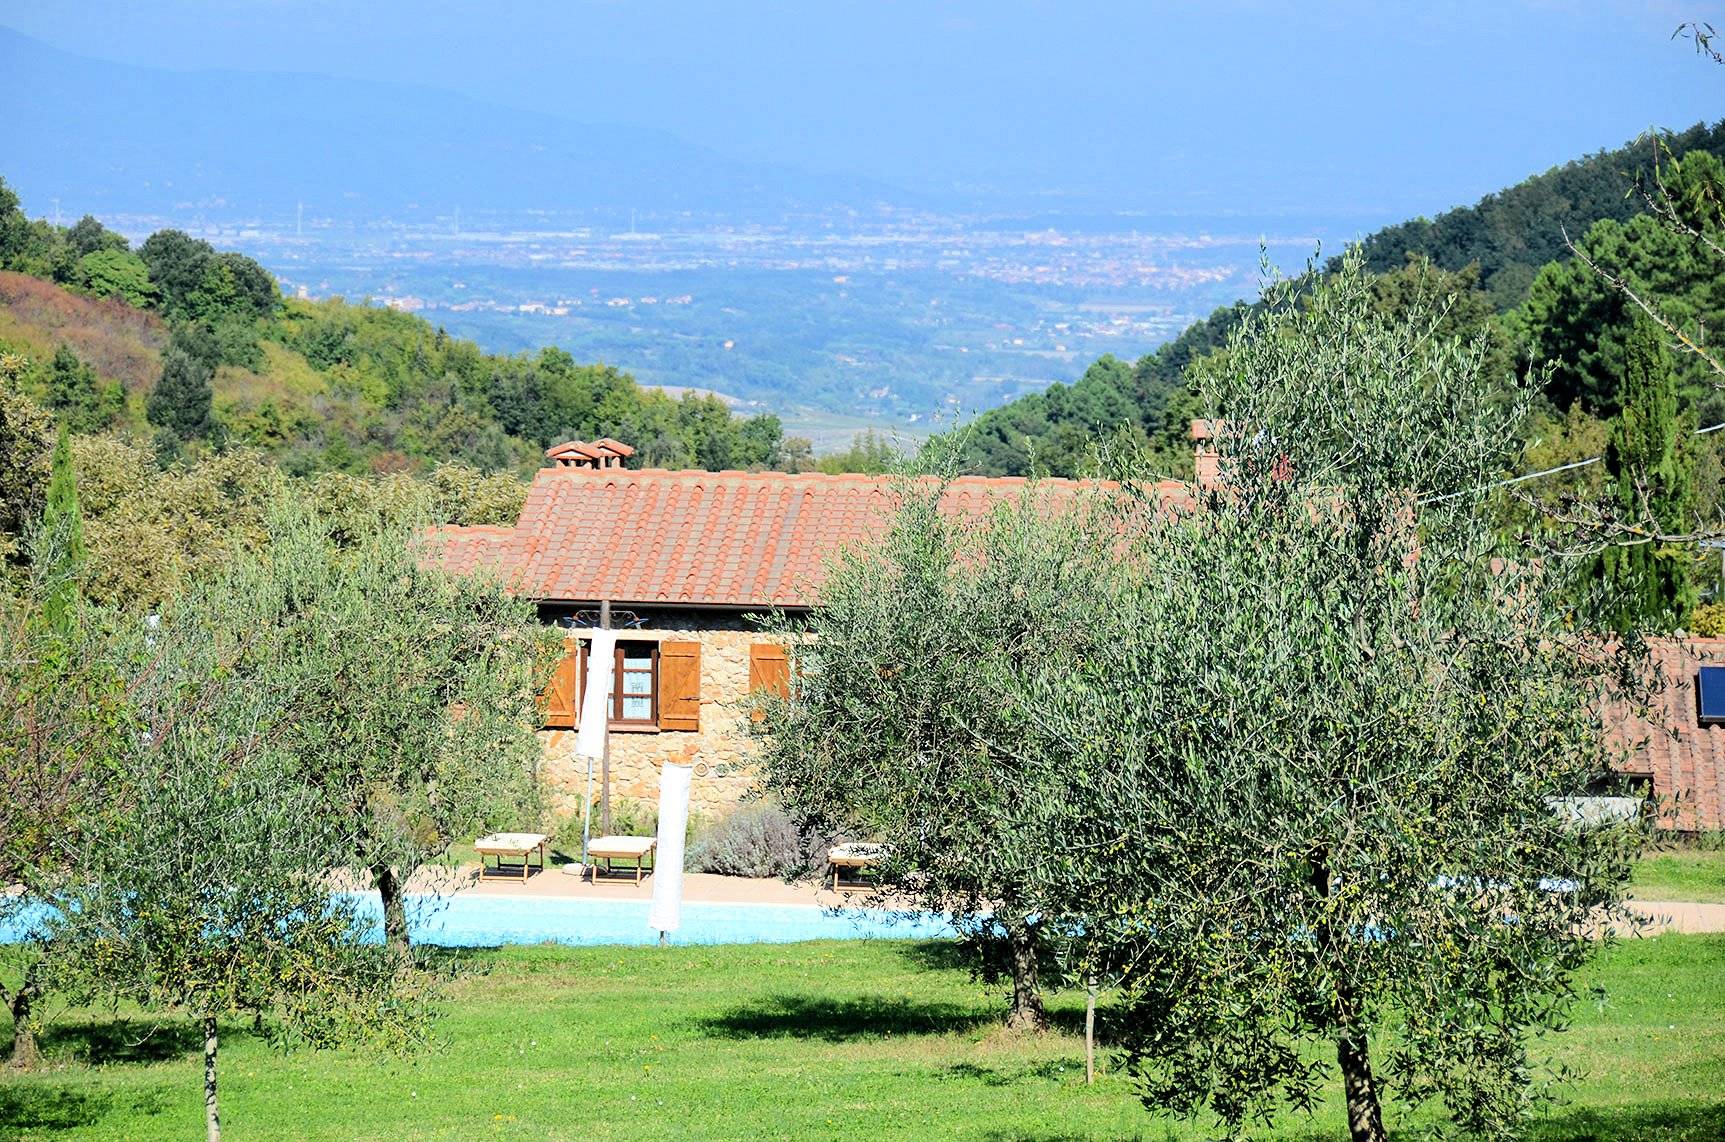 1330-Casale in stile Toscano con parco piscina e dependance in zona panoramica-Chianni-1 Agenzia Immobiliare ASIP